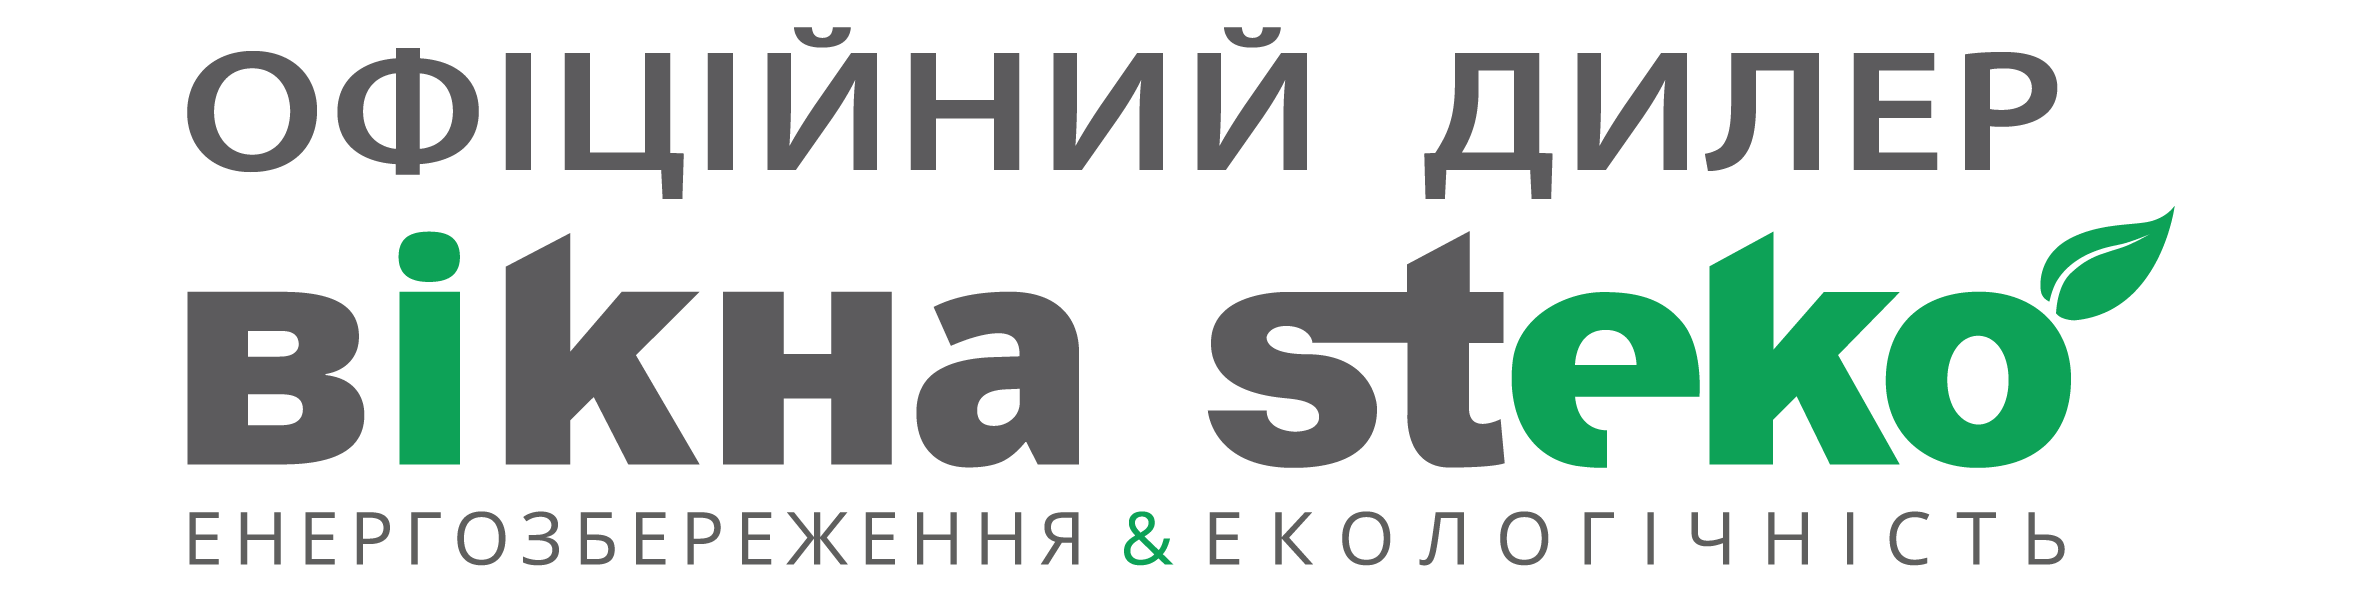 logo-steko-dealer2017